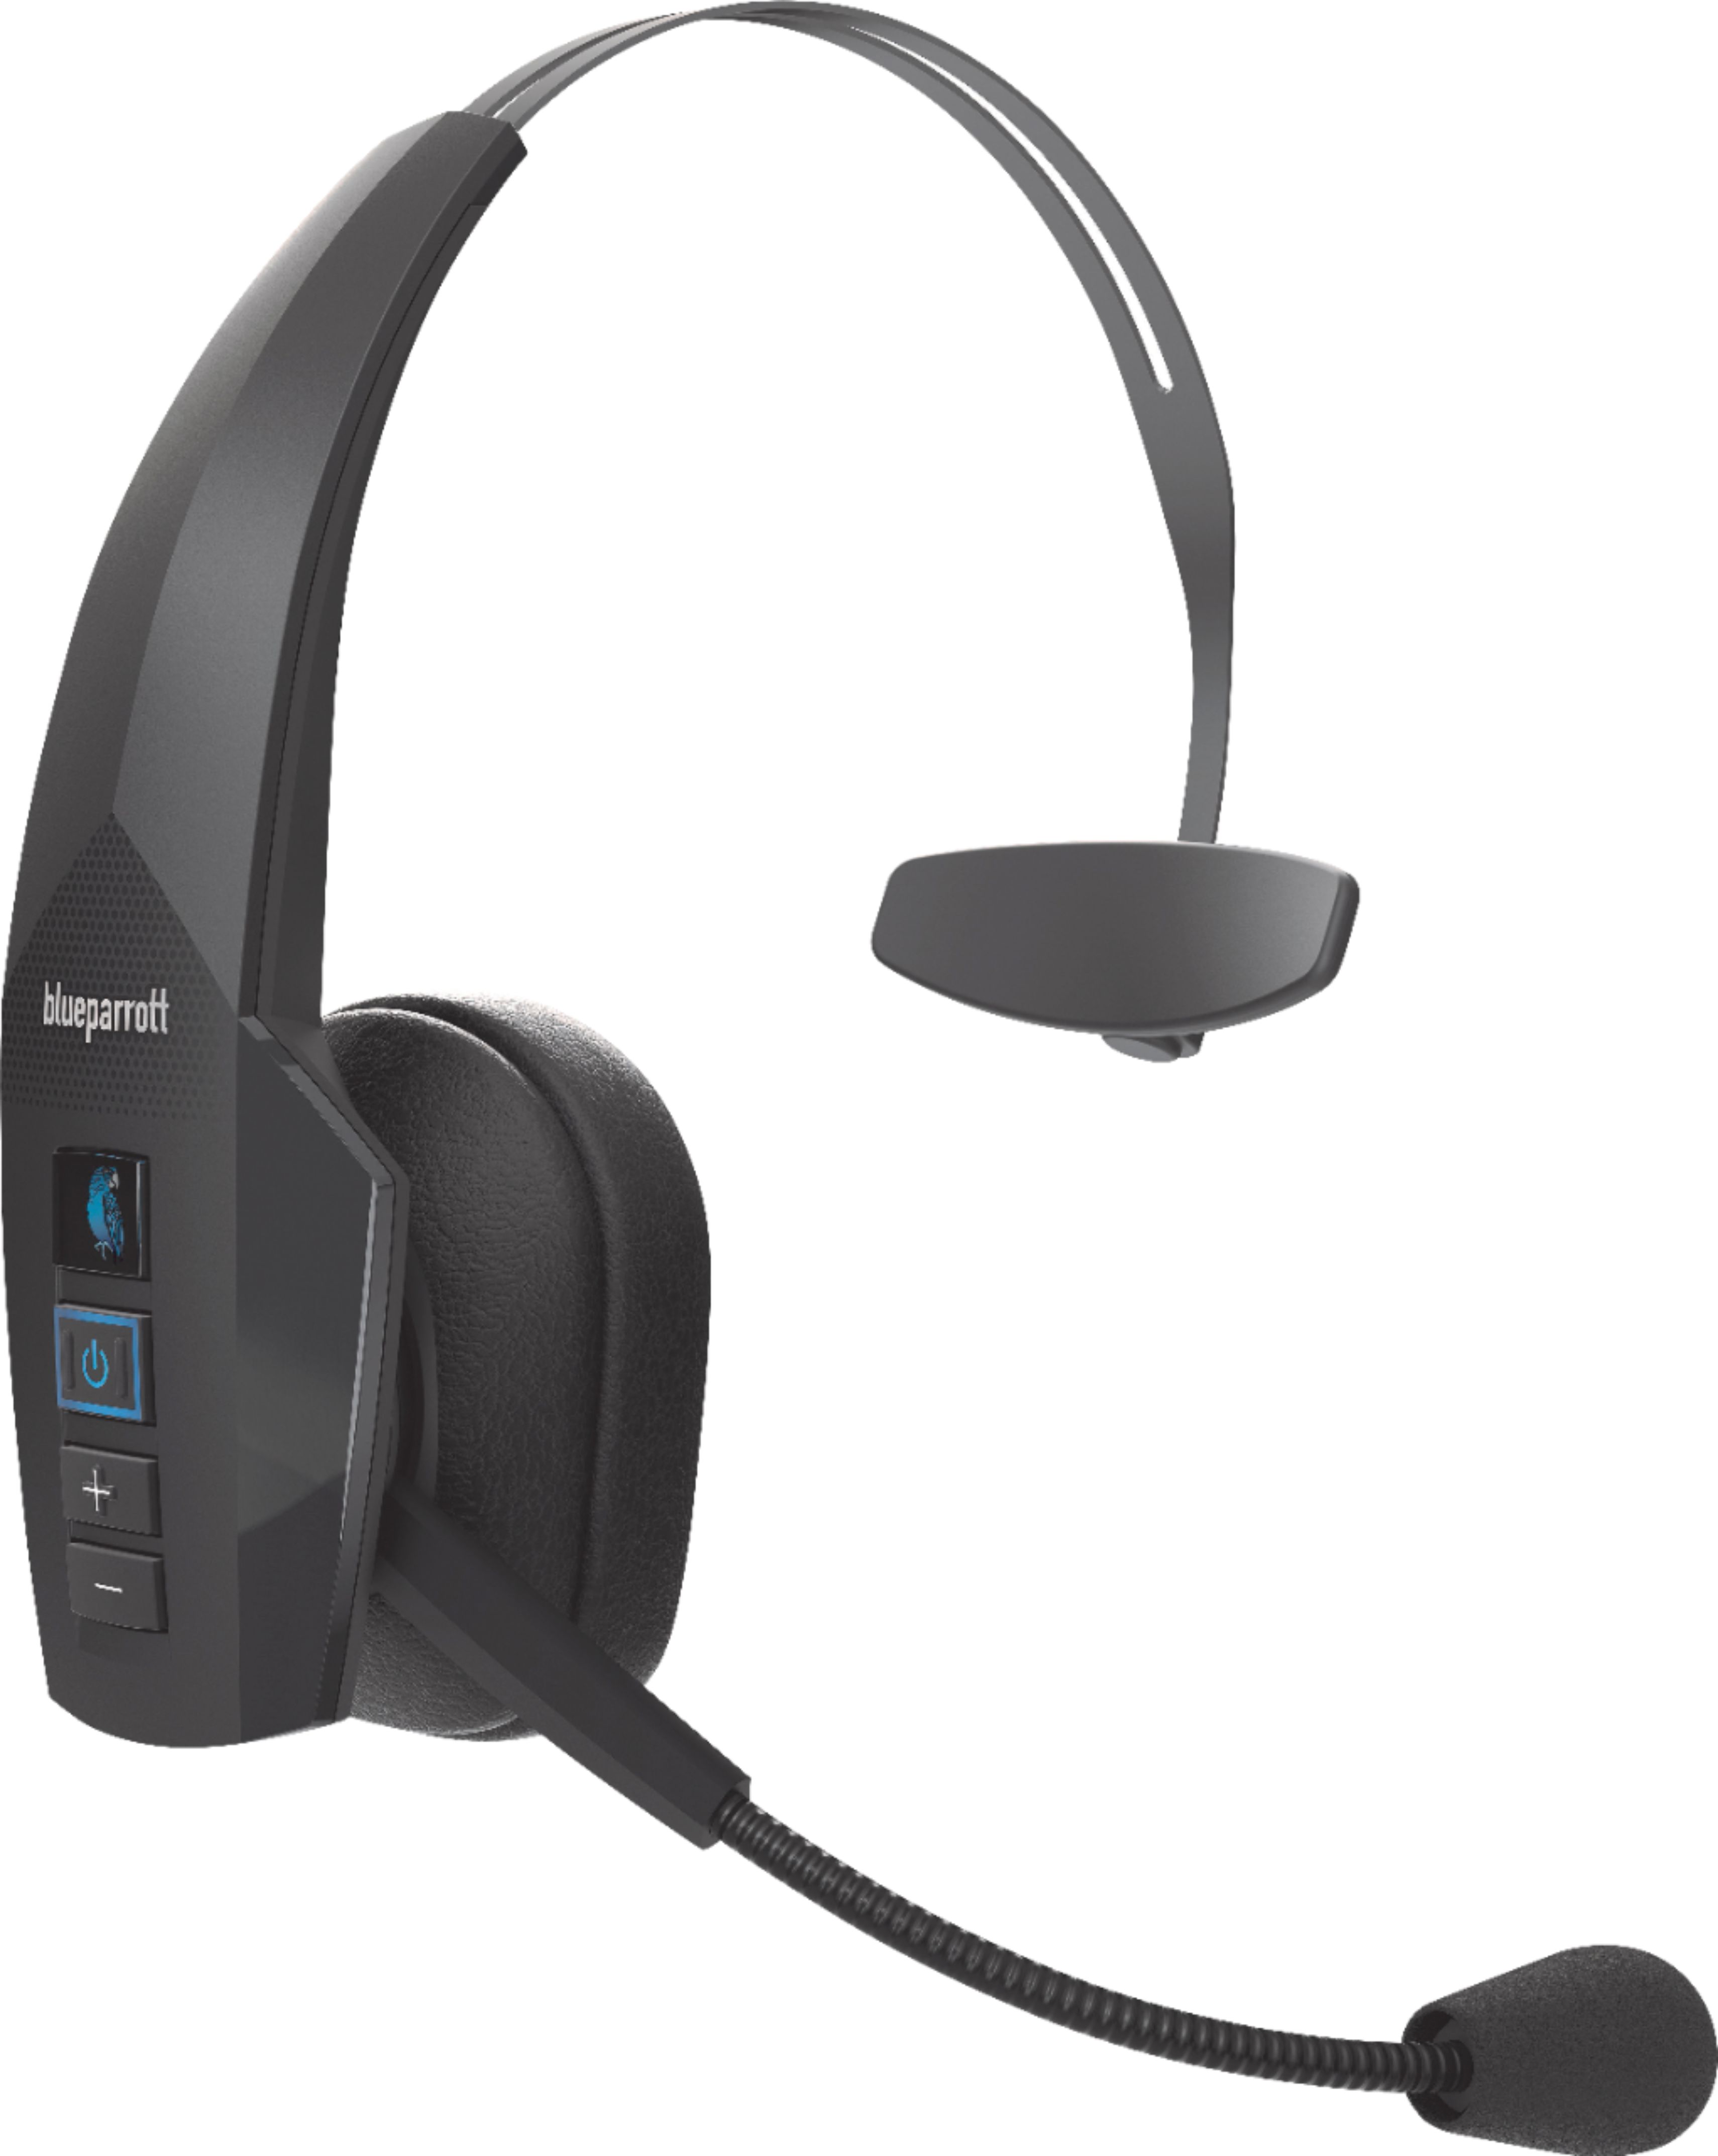 Angle View: BlueParrott - B350-XT Wireless On-Ear Headset - Black